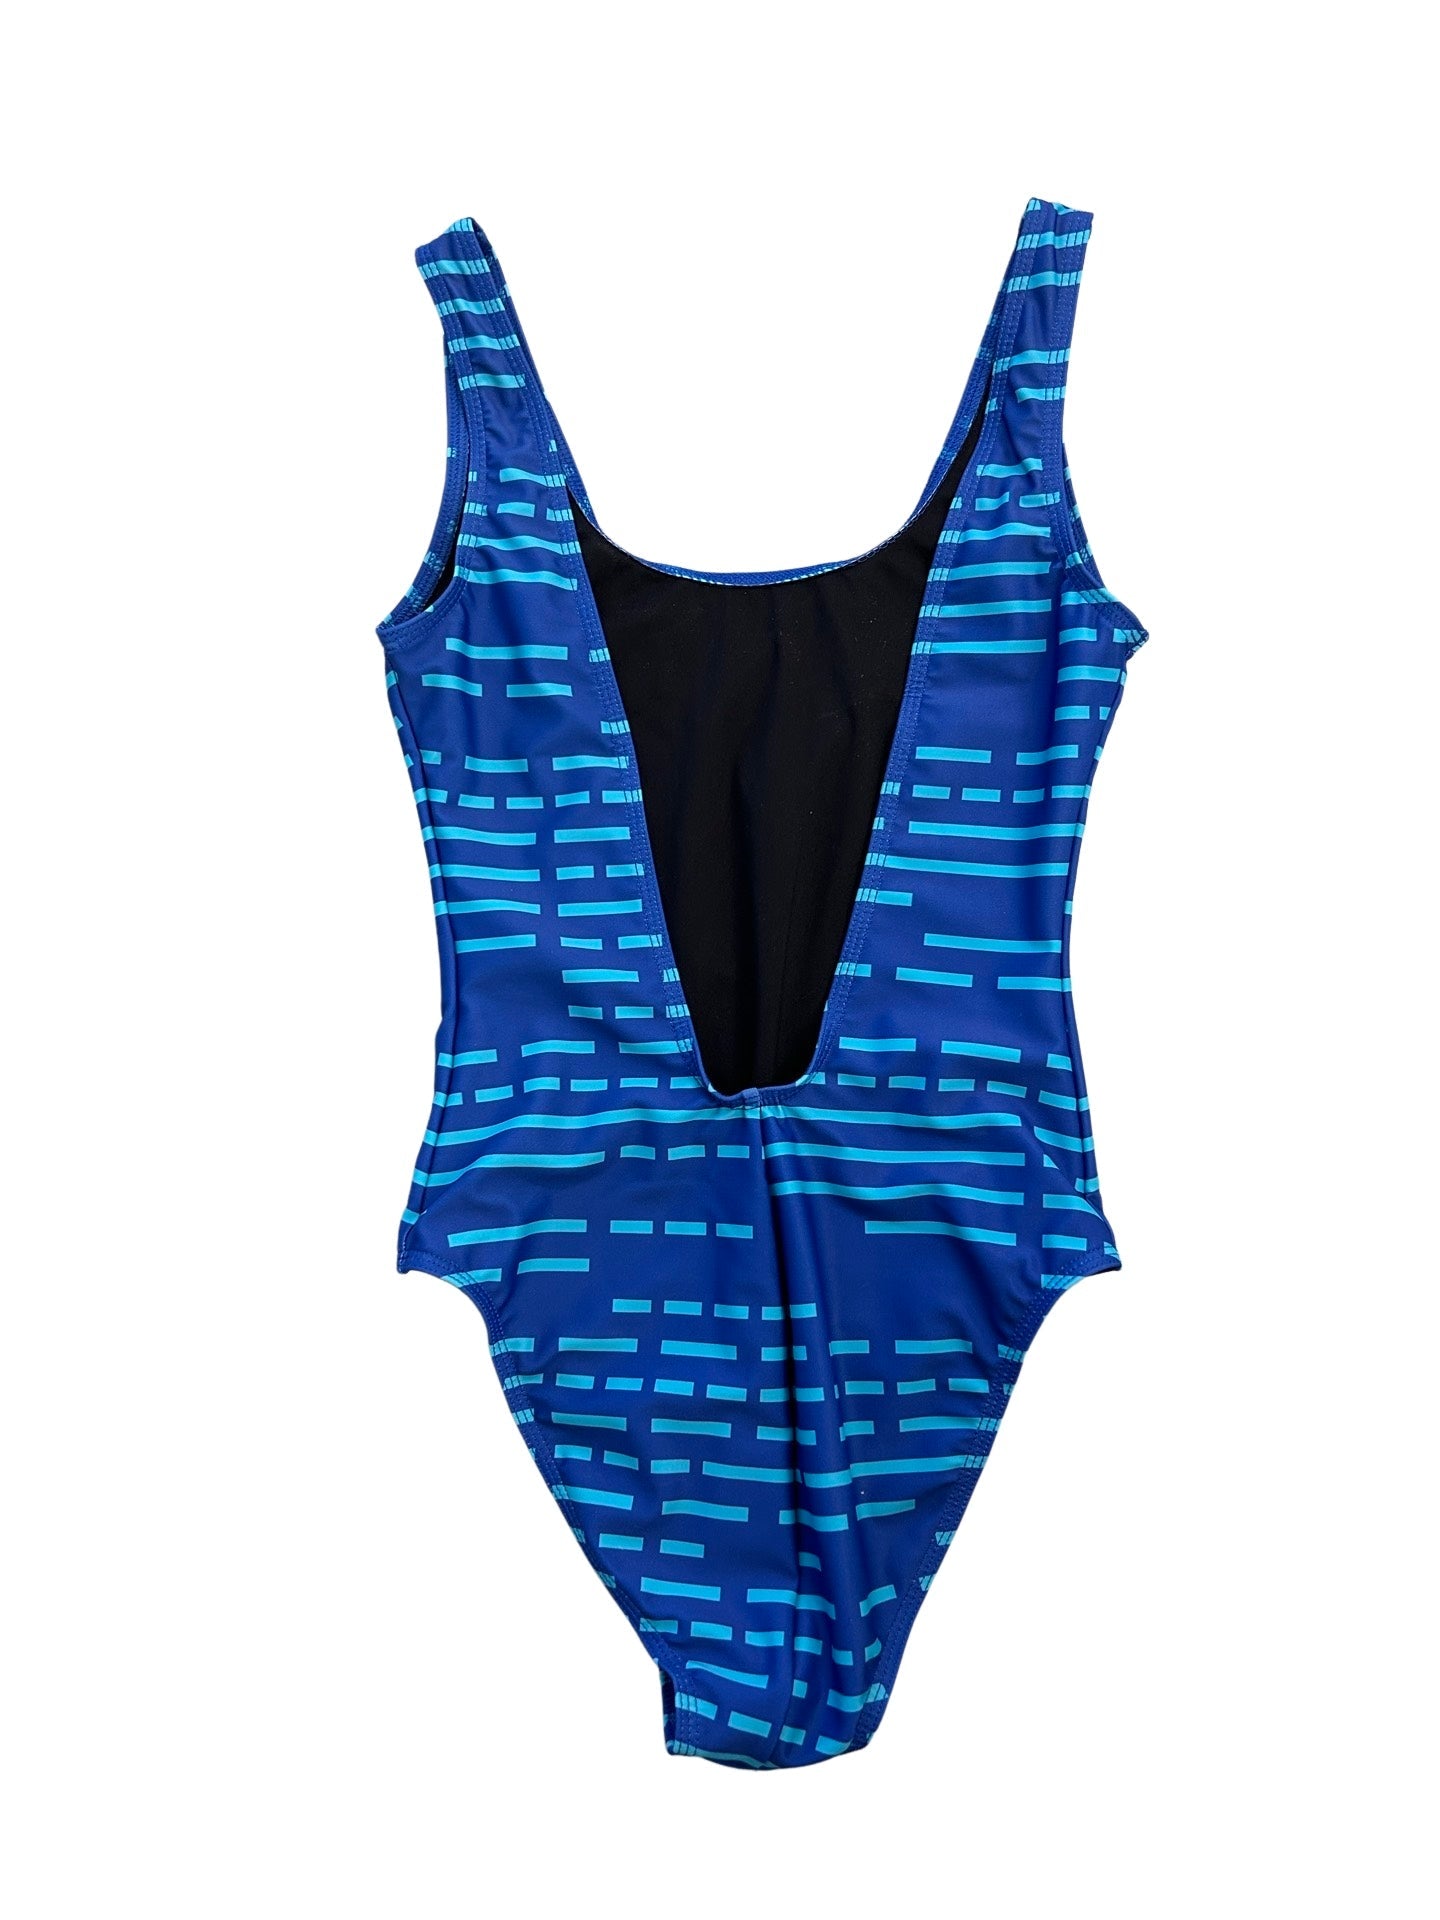 The classic BAHNS swimsuit - Blue/blue